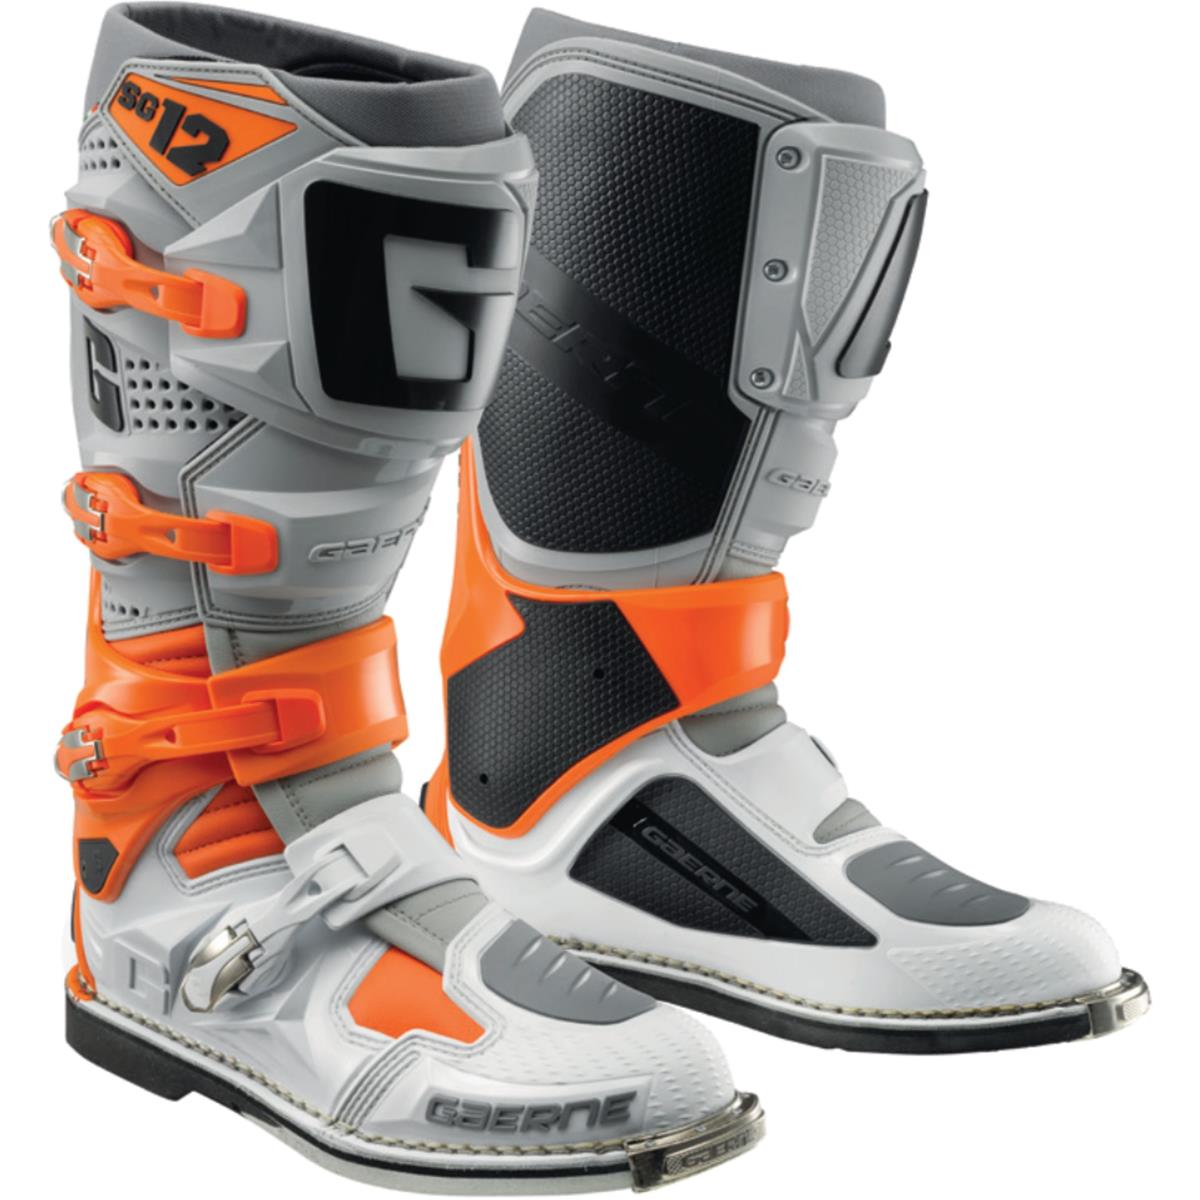 Gaerne Motocross-Stiefel SG 12 Orange/Grau/Weiß